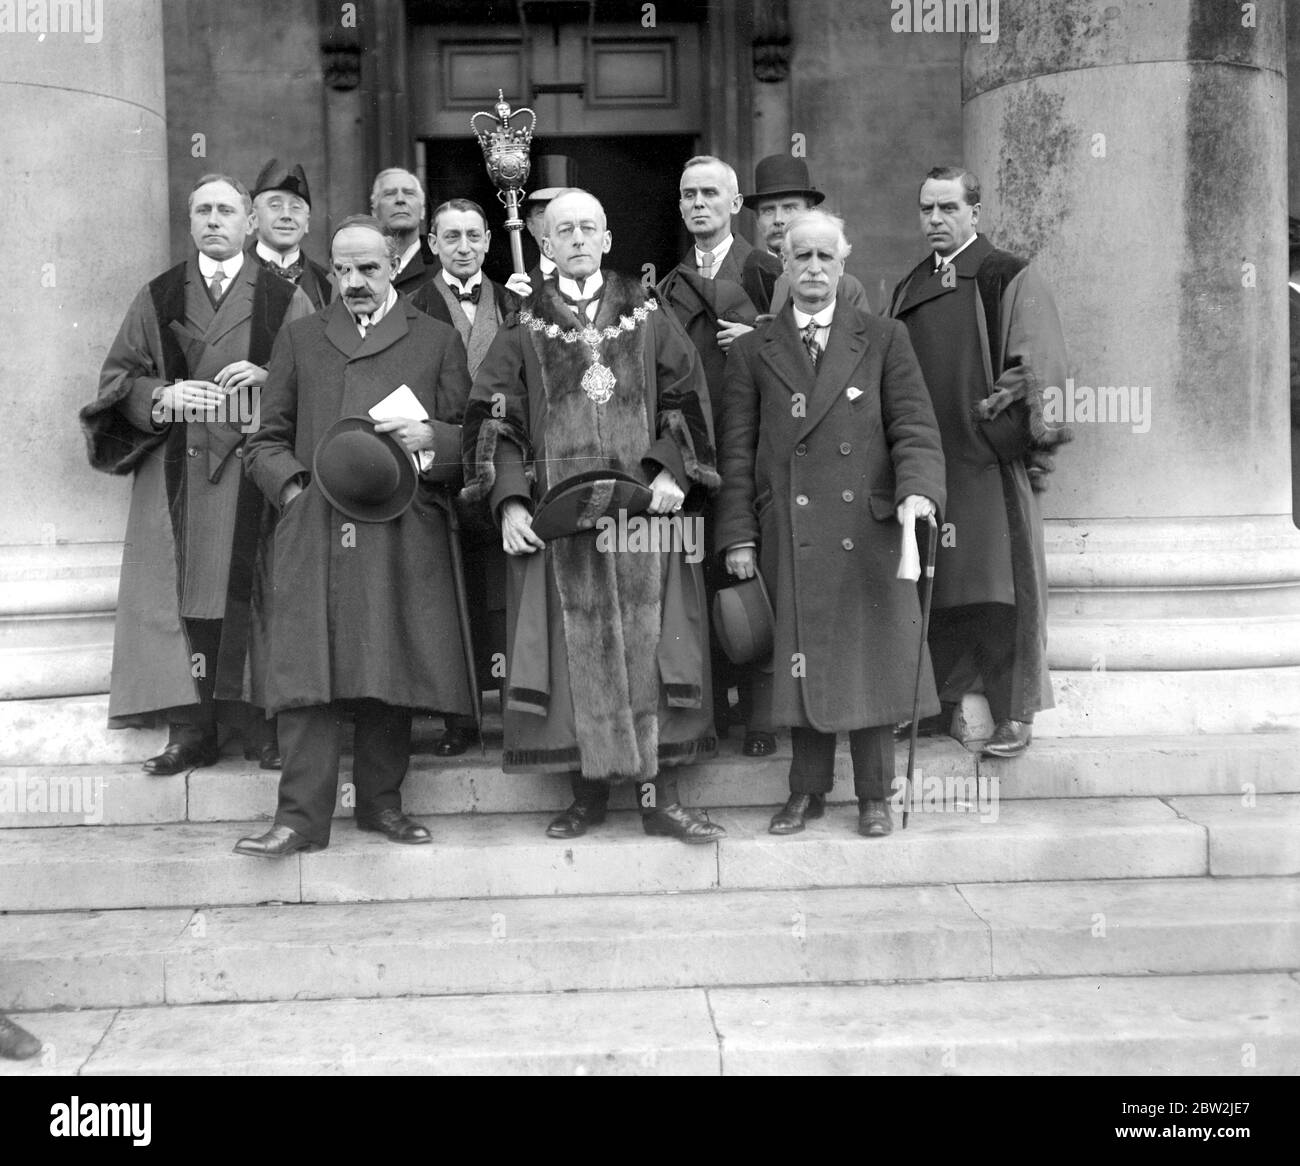 Cérémonie de sauvetage de guerre de Marylebone sur les marches de l'église paroissiale de Marylebone. Le maire et les conseillers. 9 février 1918 Banque D'Images